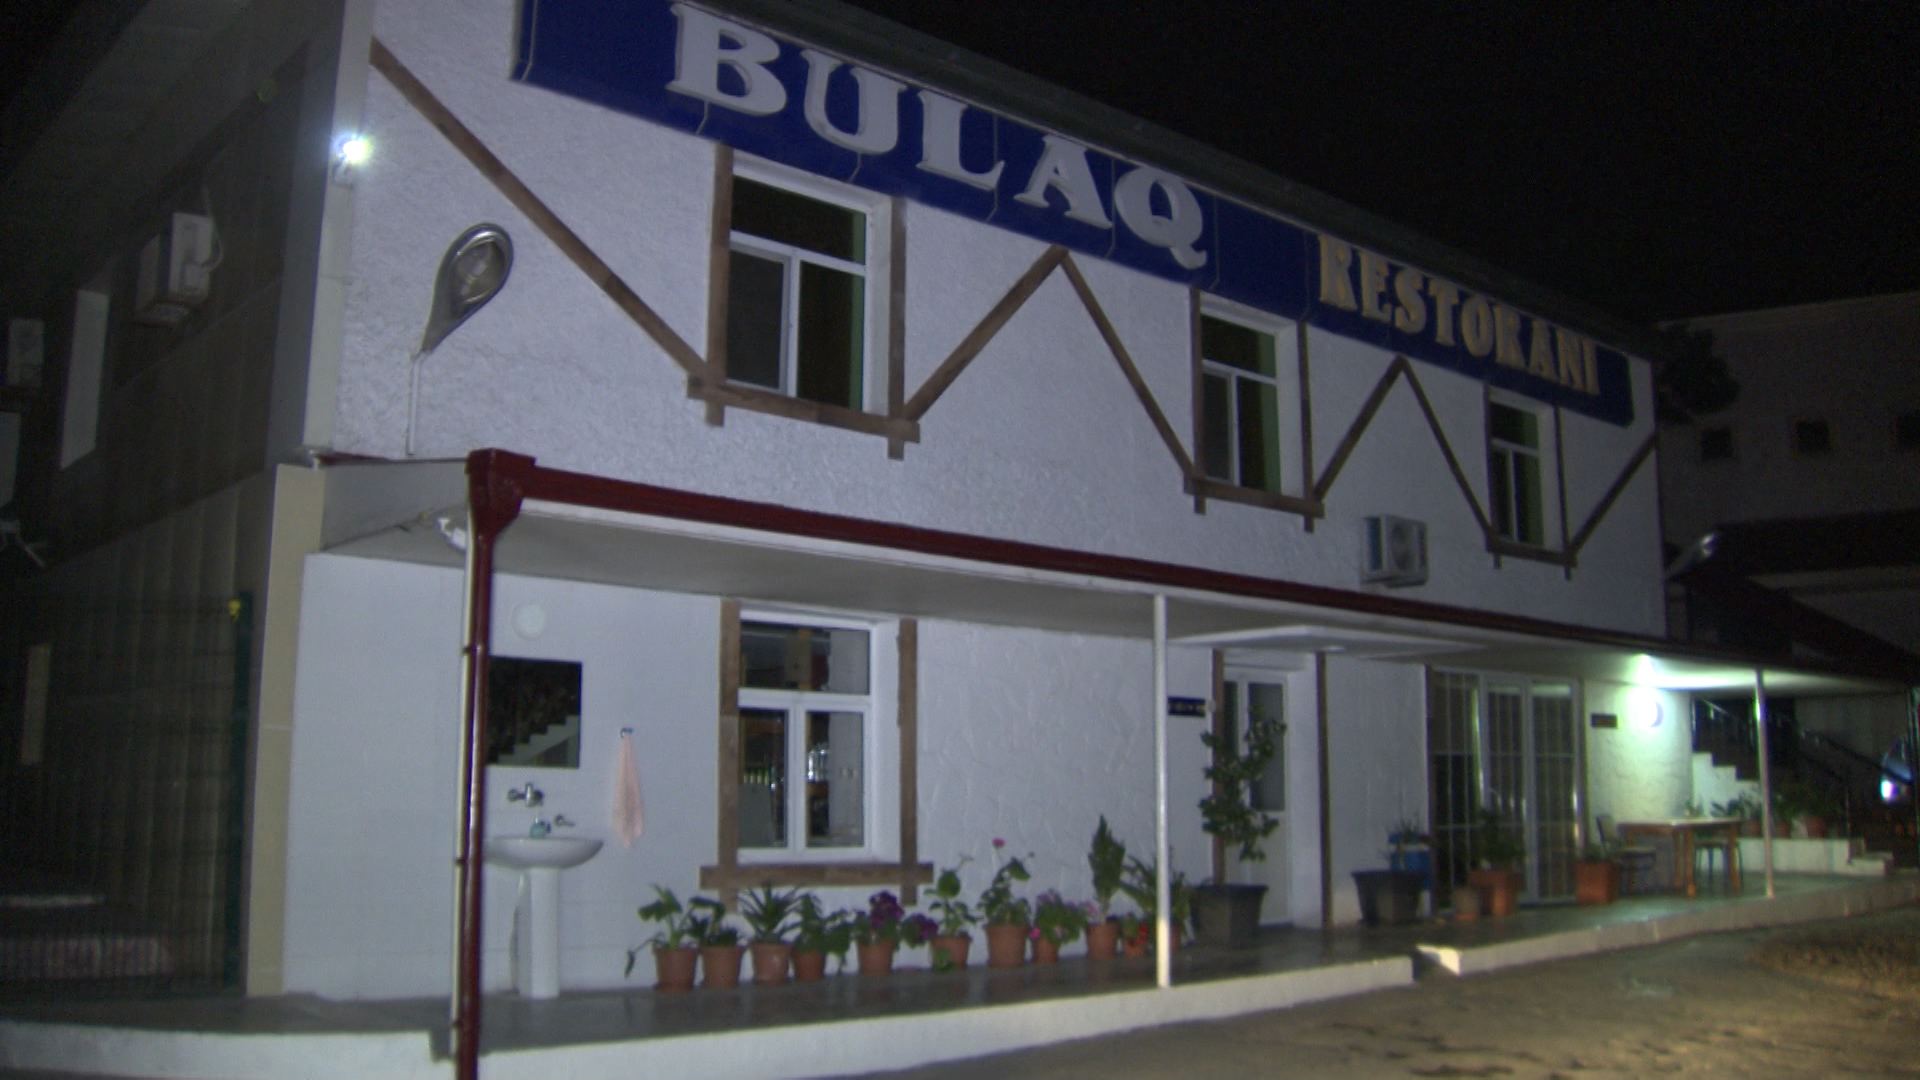 Biləcəridə gizli fəaliyyət göstərən restoran aşkarlandı (FOTO/VİDEO)